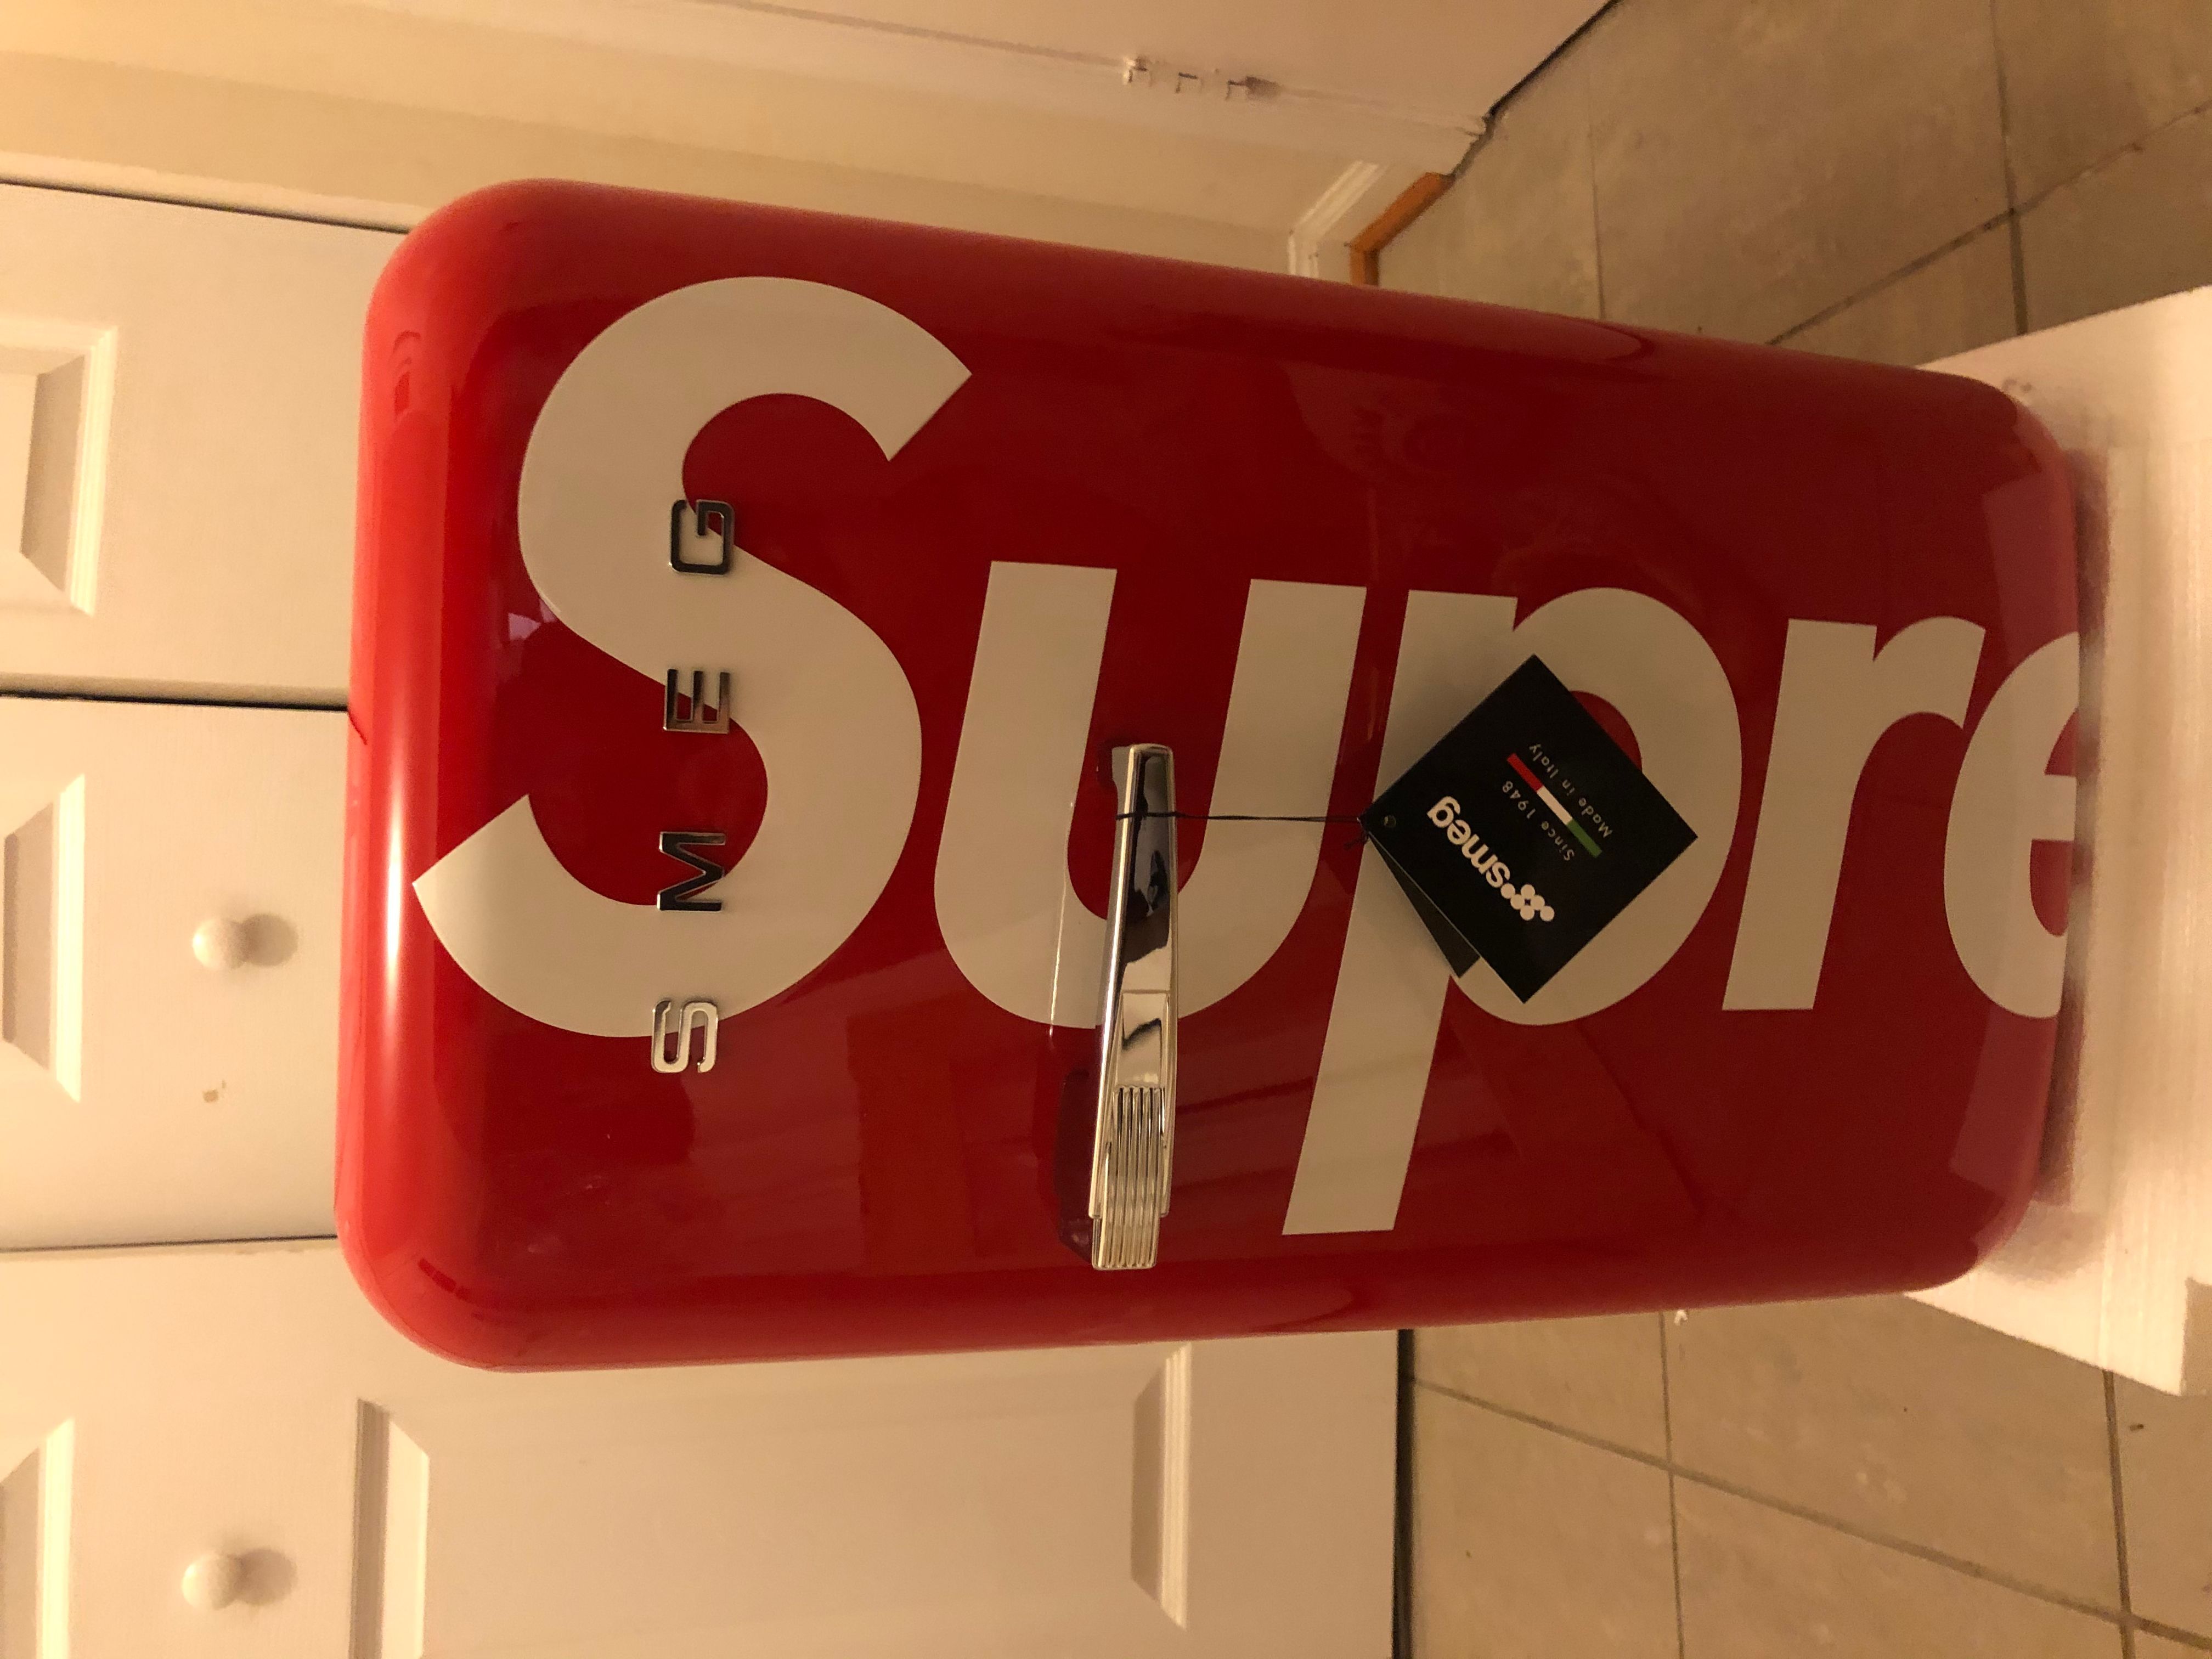 Supreme Supreme®/SMEG Mini Refrigerator